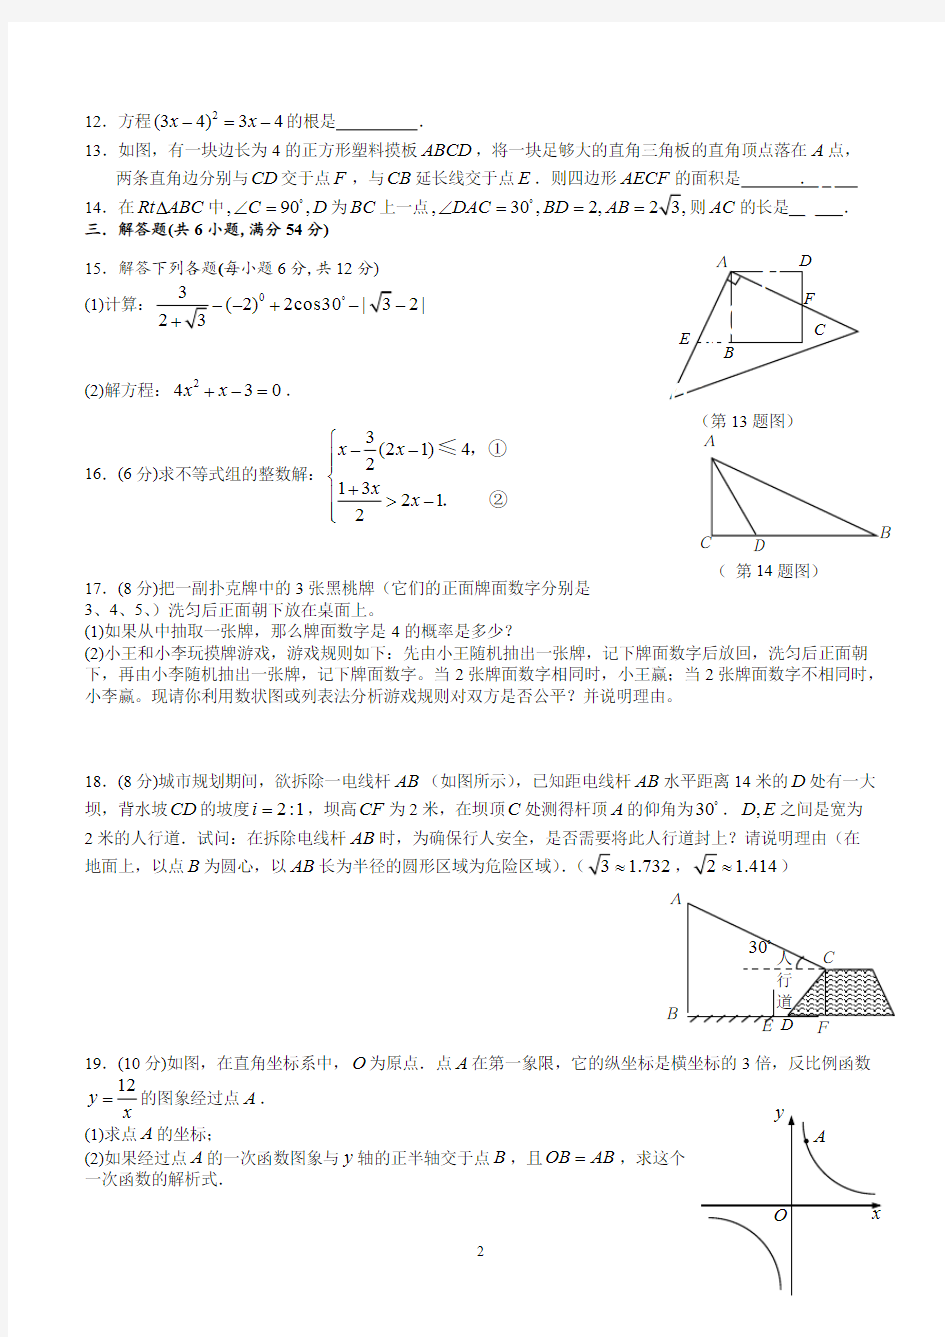 (完整版)成都市初三中考数学模拟试题(1)(含答案)